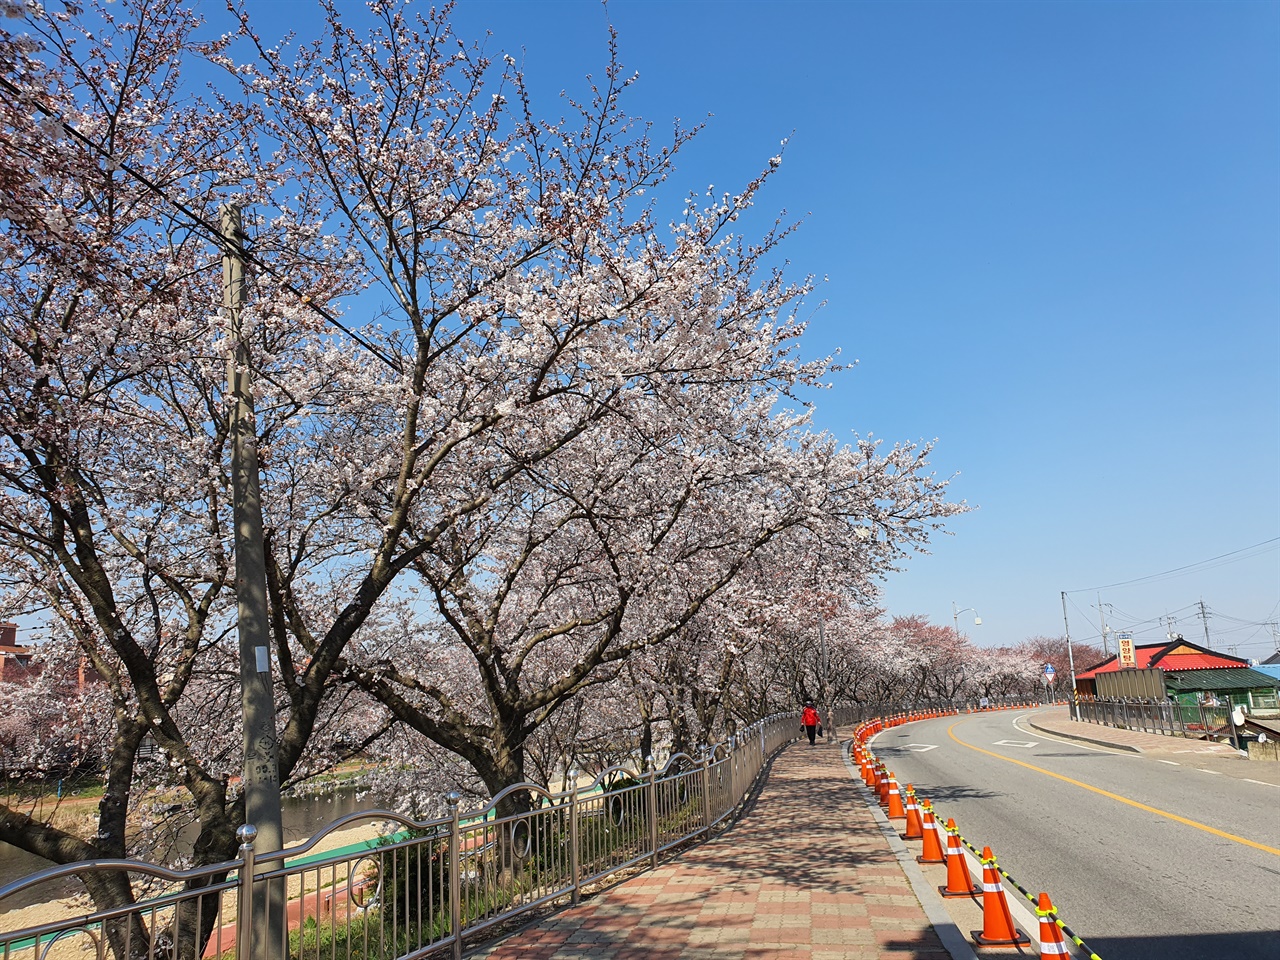 서산시는 지난 1일 축제 취소와 함께 해미천 진입로 및 계단이 폐쇄되며, 4일부터 12일까지 천변 제방길 보행로 이용이 금지된다고 밝혔다. 또한 벚꽃축제길로 통하는 진출입로가 전면통제된다.